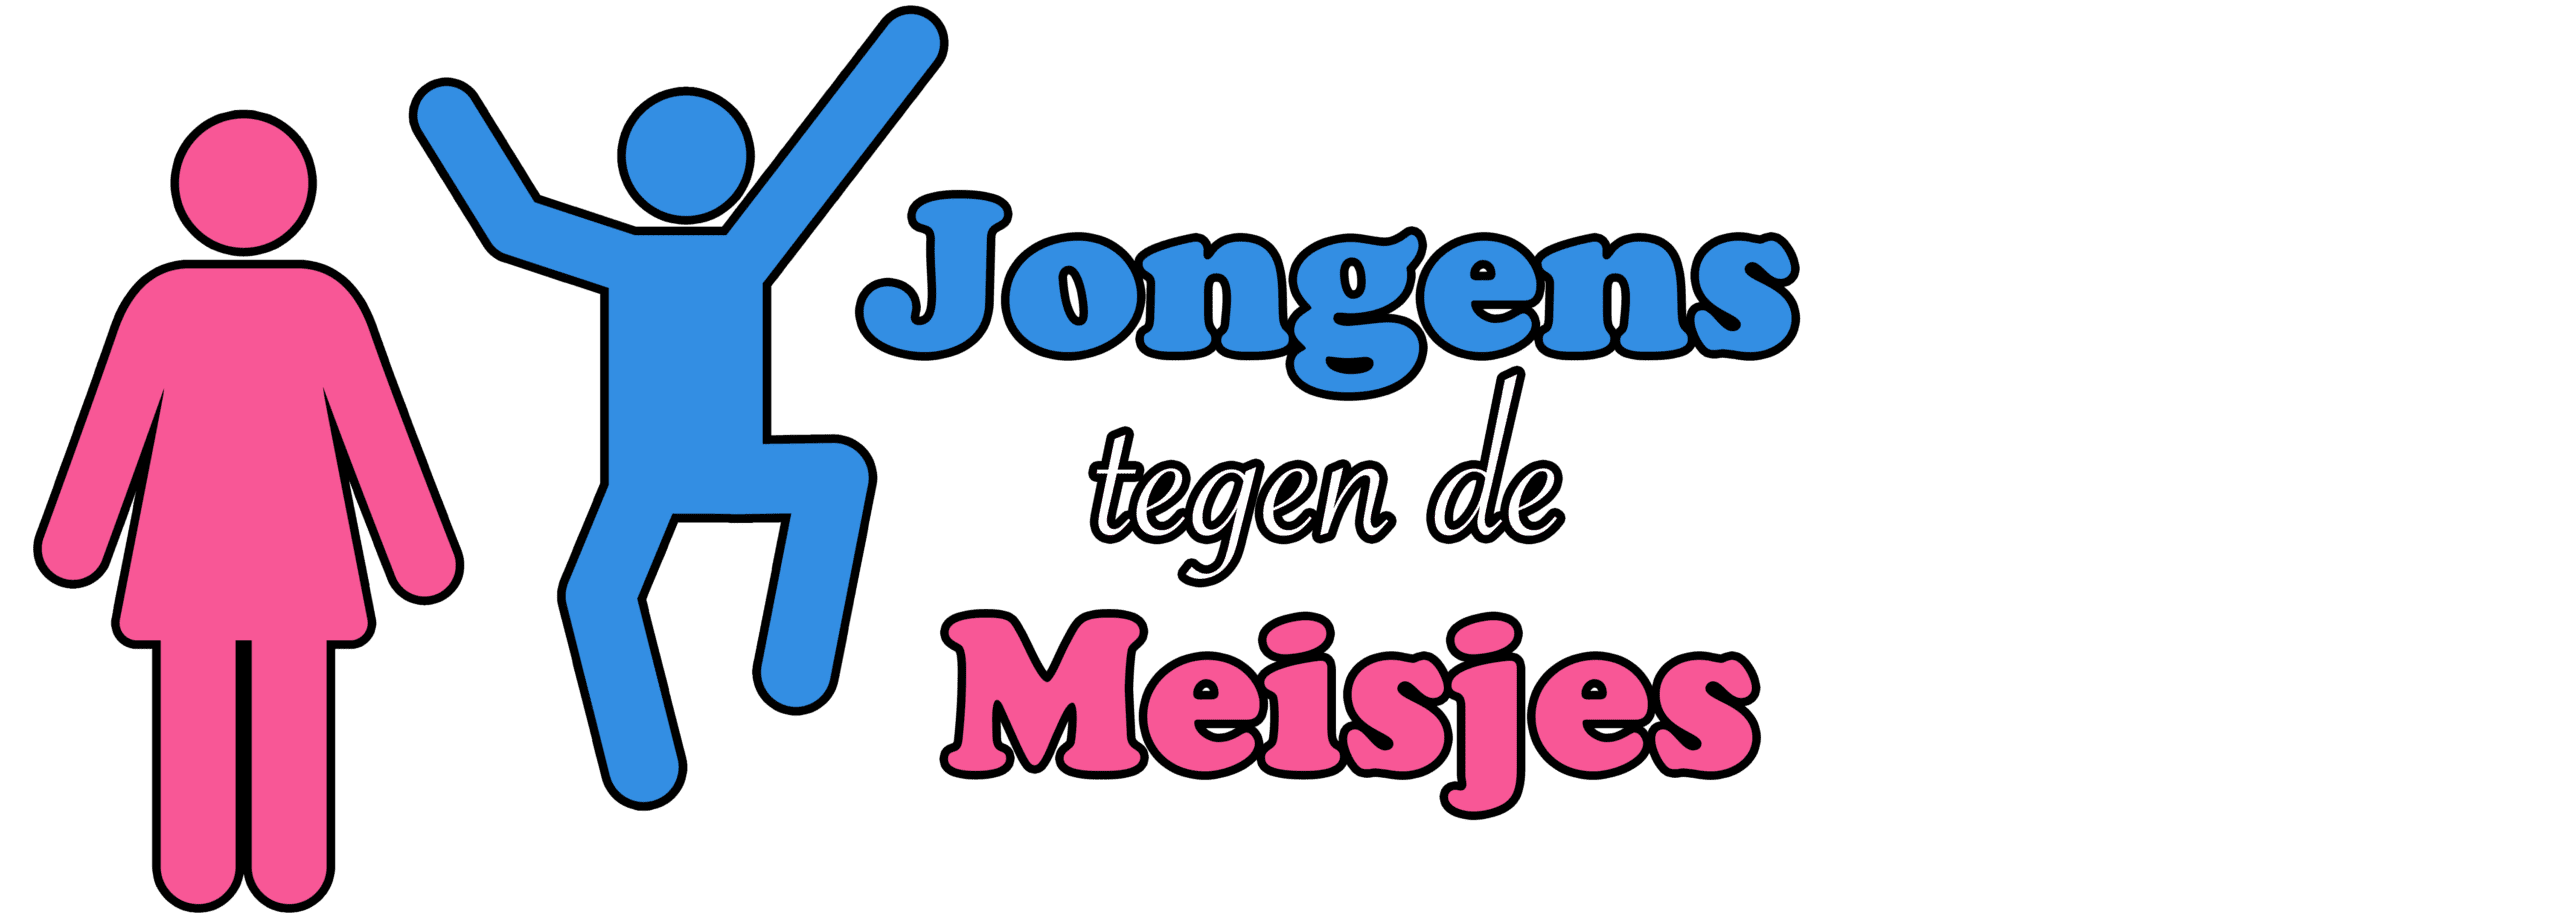 Verwonderend Jongens tegen de meisjes - BeleefBreda.nl OM-28